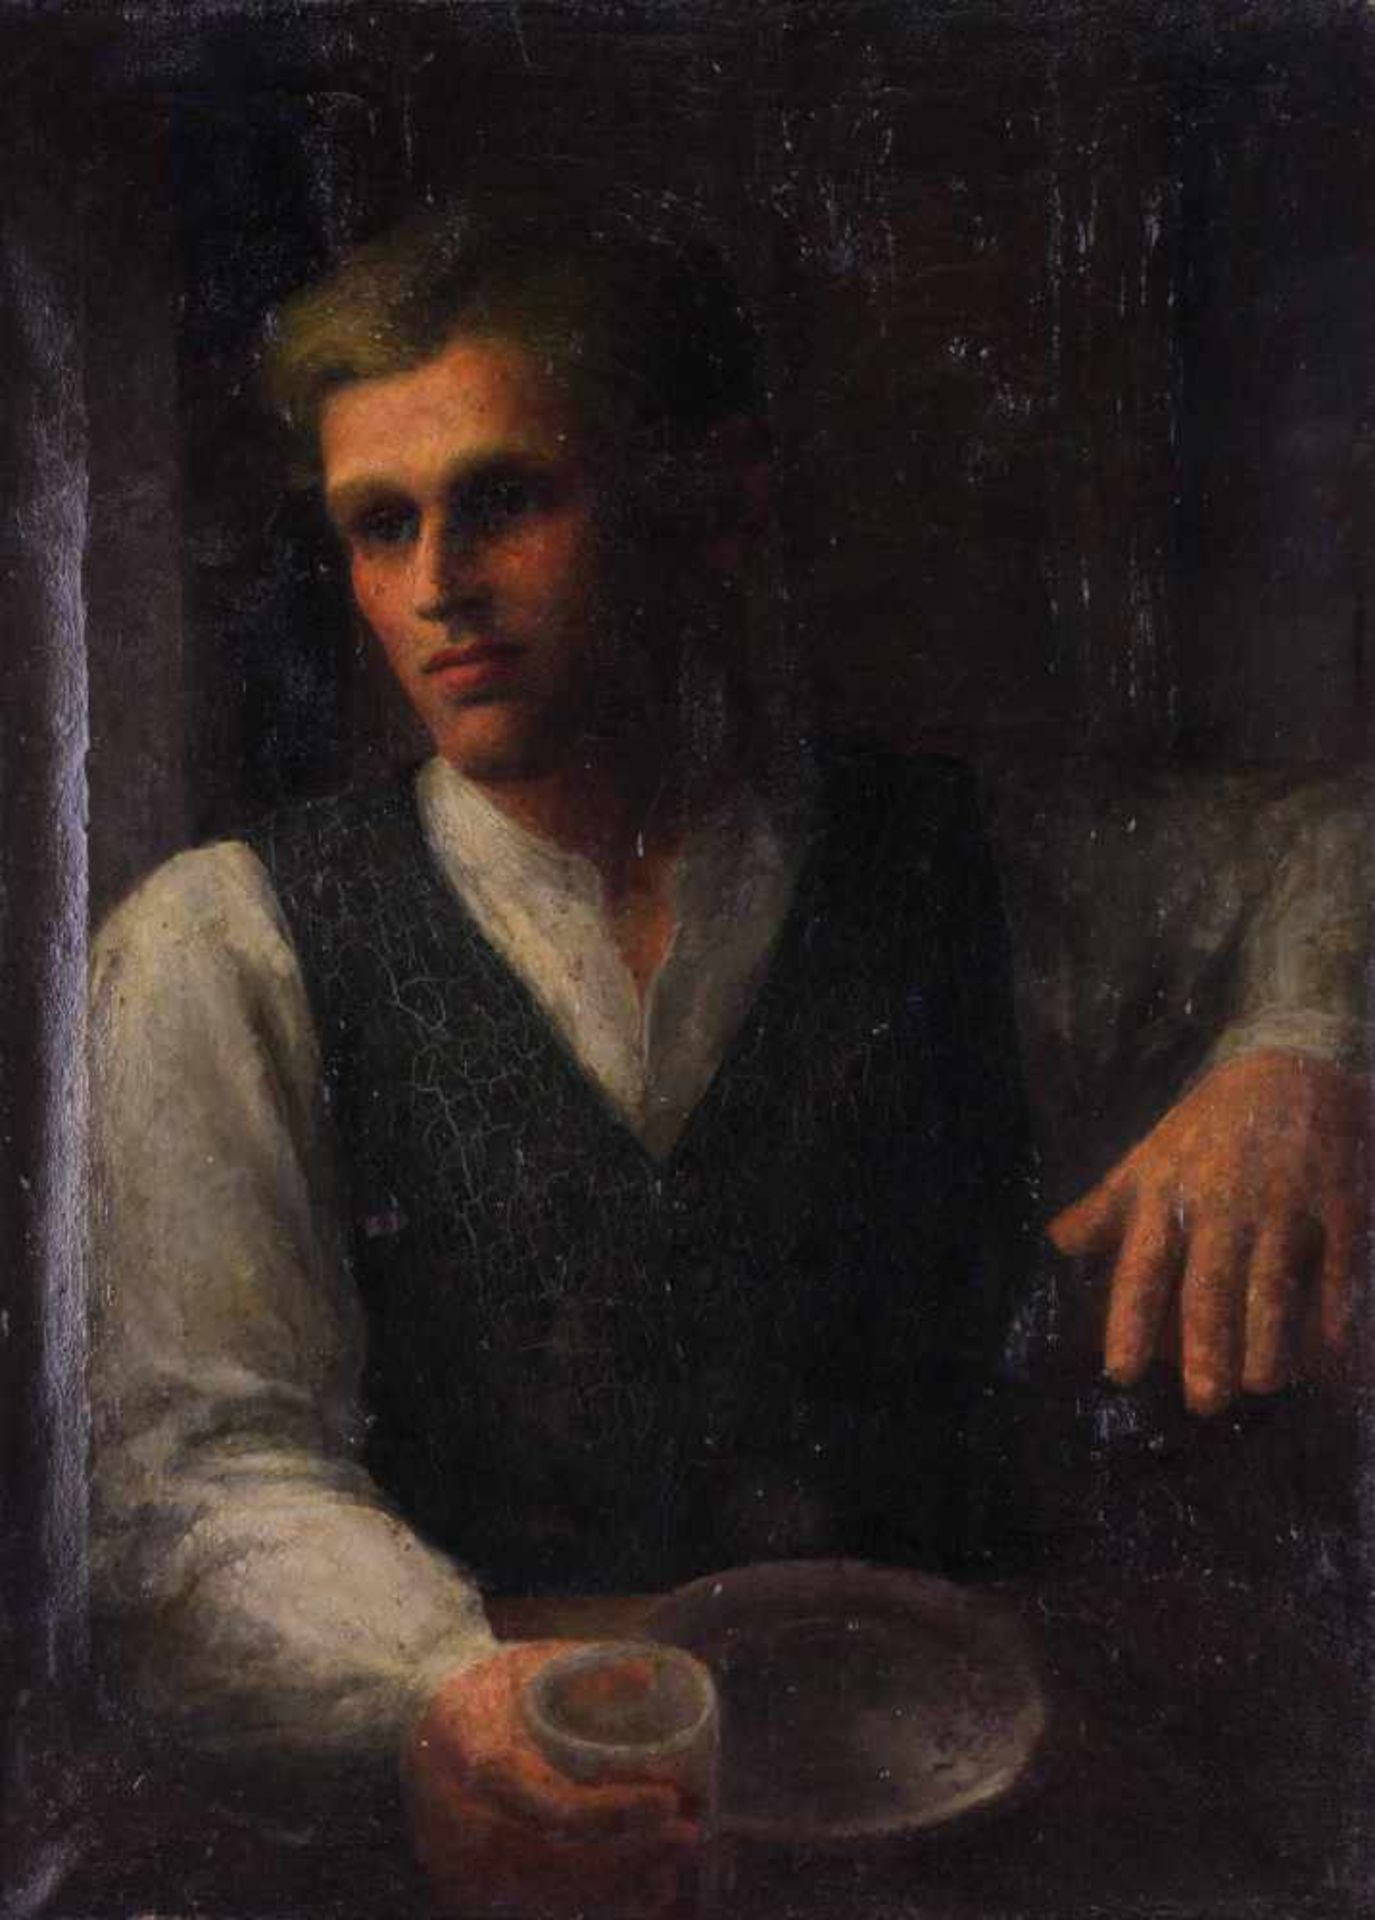 E.W.Kallen-Künstlerin des frühen 20. Jhd. "Bildnis eines jungen Mannes" Gemälde Öl/Leinwand, 89 cm x